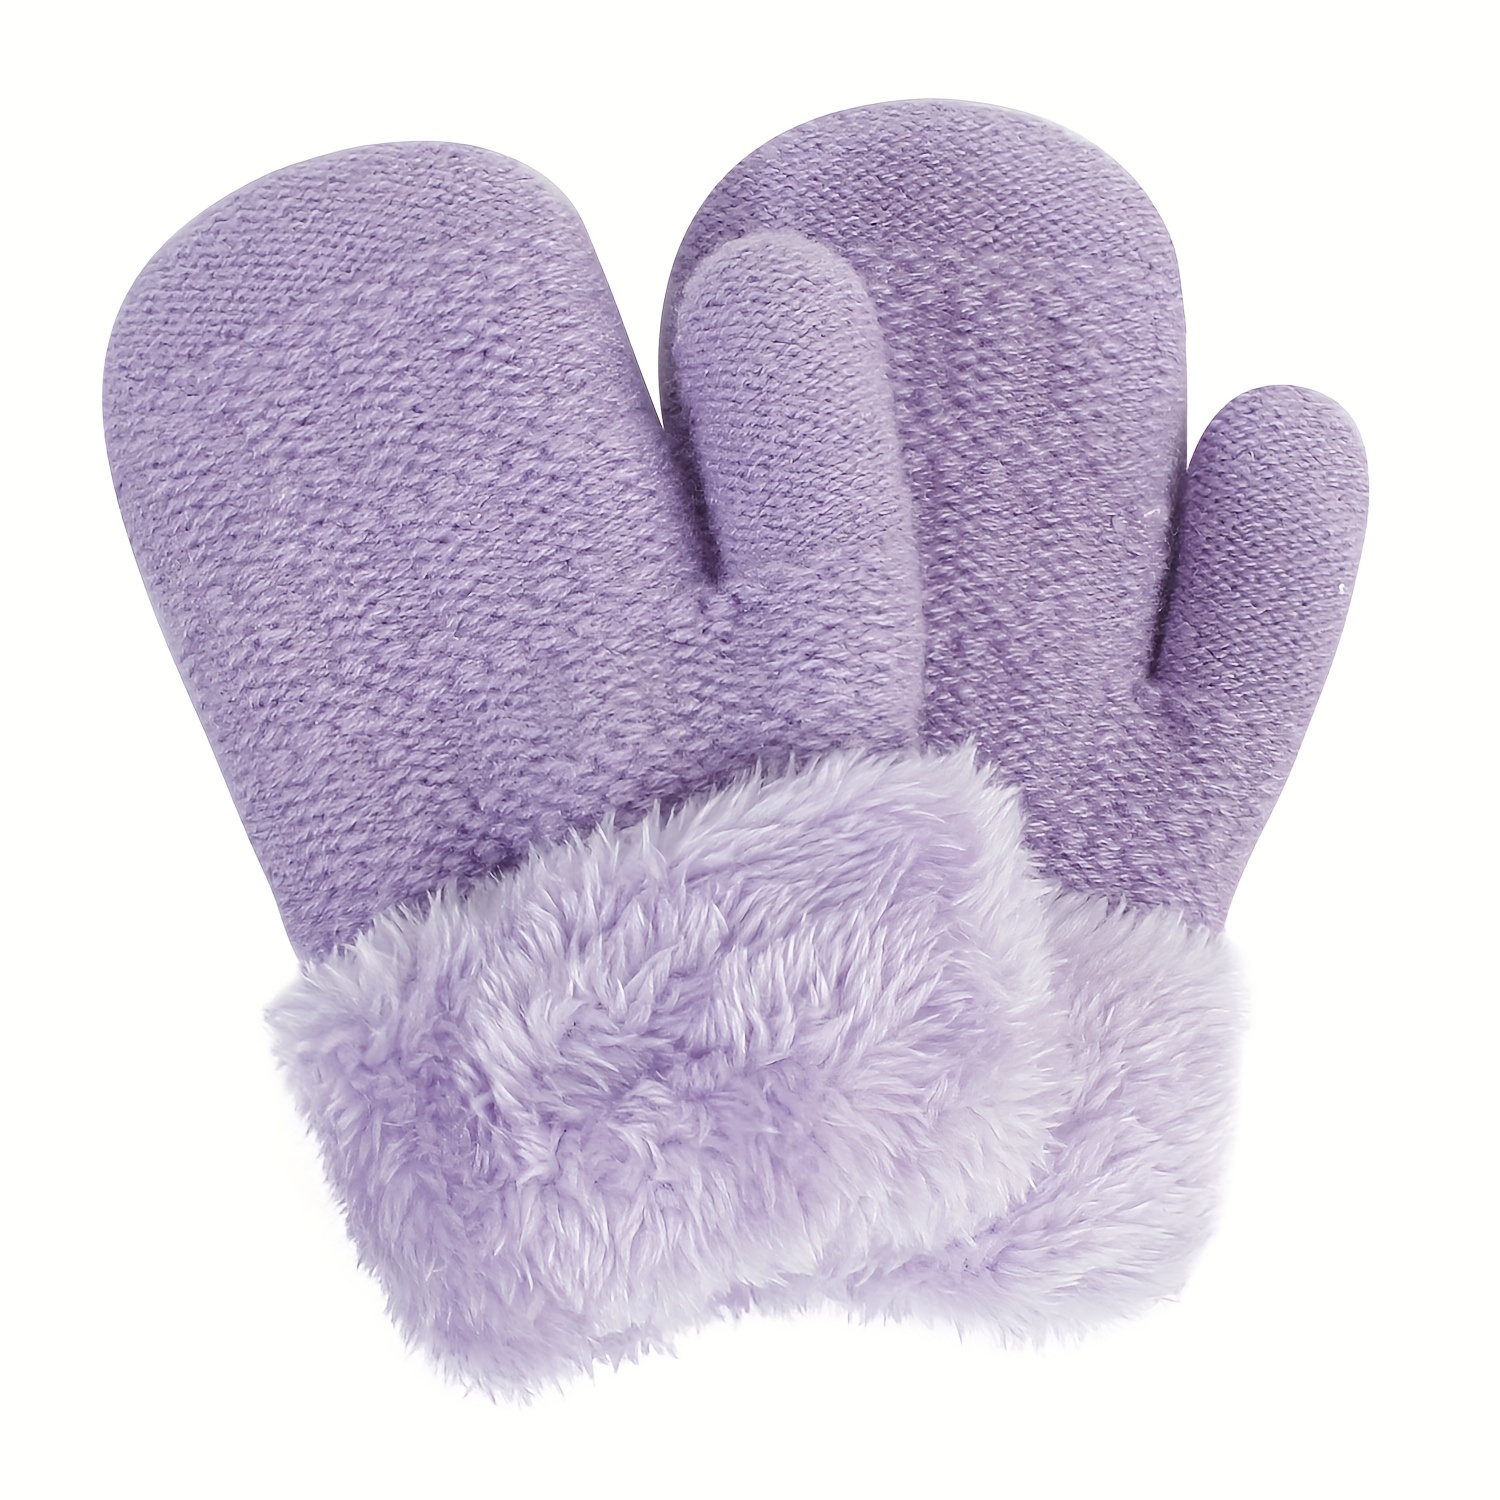 Moufles pour enfants - Doublure chaude - Gants de ski - Gants de neige -  Imperméables - Protection contre le froid - B2 - Pour l'extérieur et le